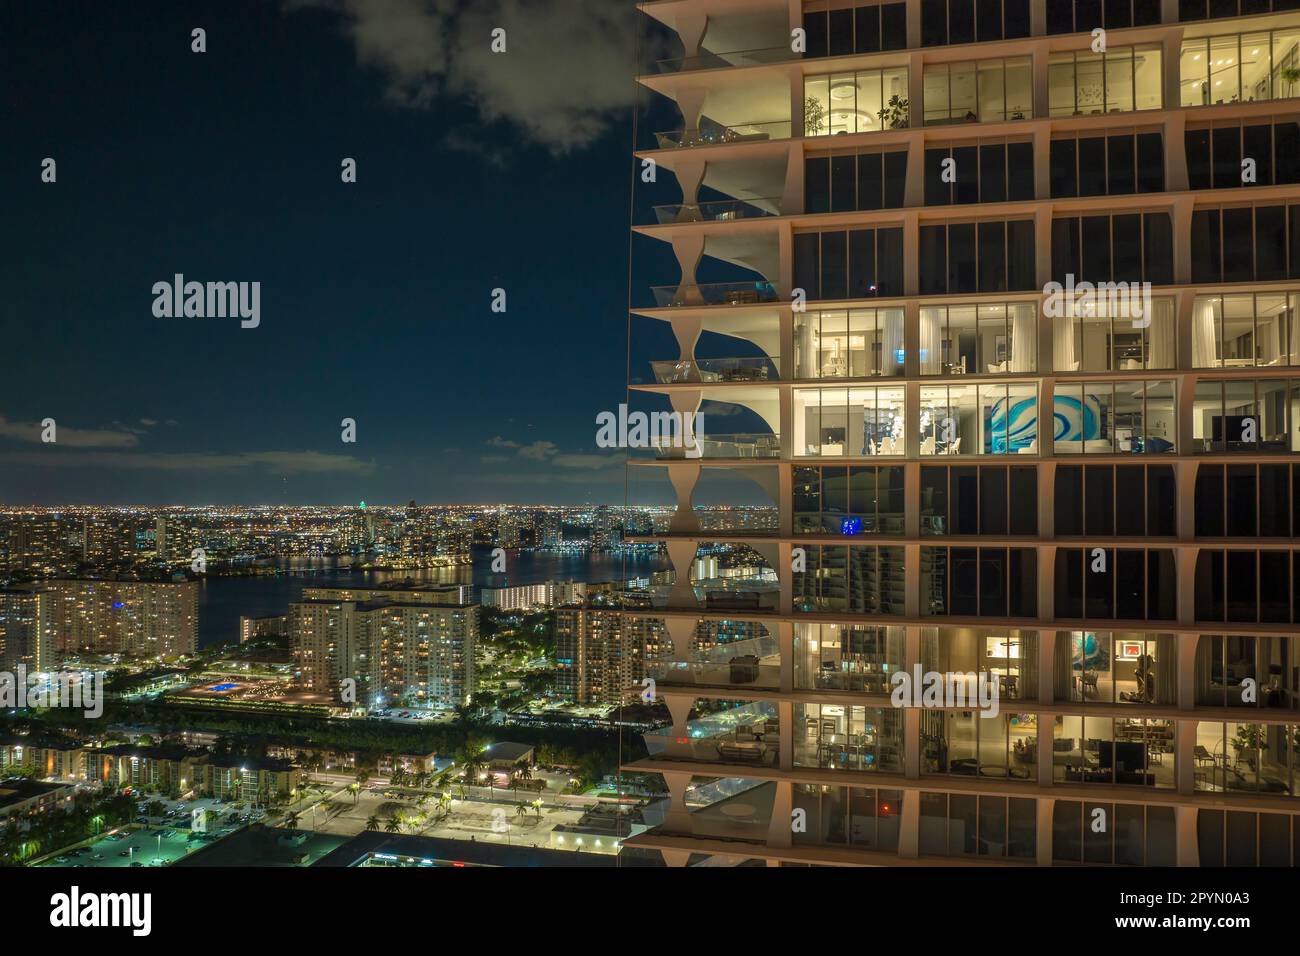 Ein Blick aus der Vogelperspektive auf den nächtlichen Hochhaus-Wolkenkratzer in der Sunny Isles Beach City in Florida, USA. Wohnungsbau im modernen amerikanischen Stadtgebiet. Stockfoto